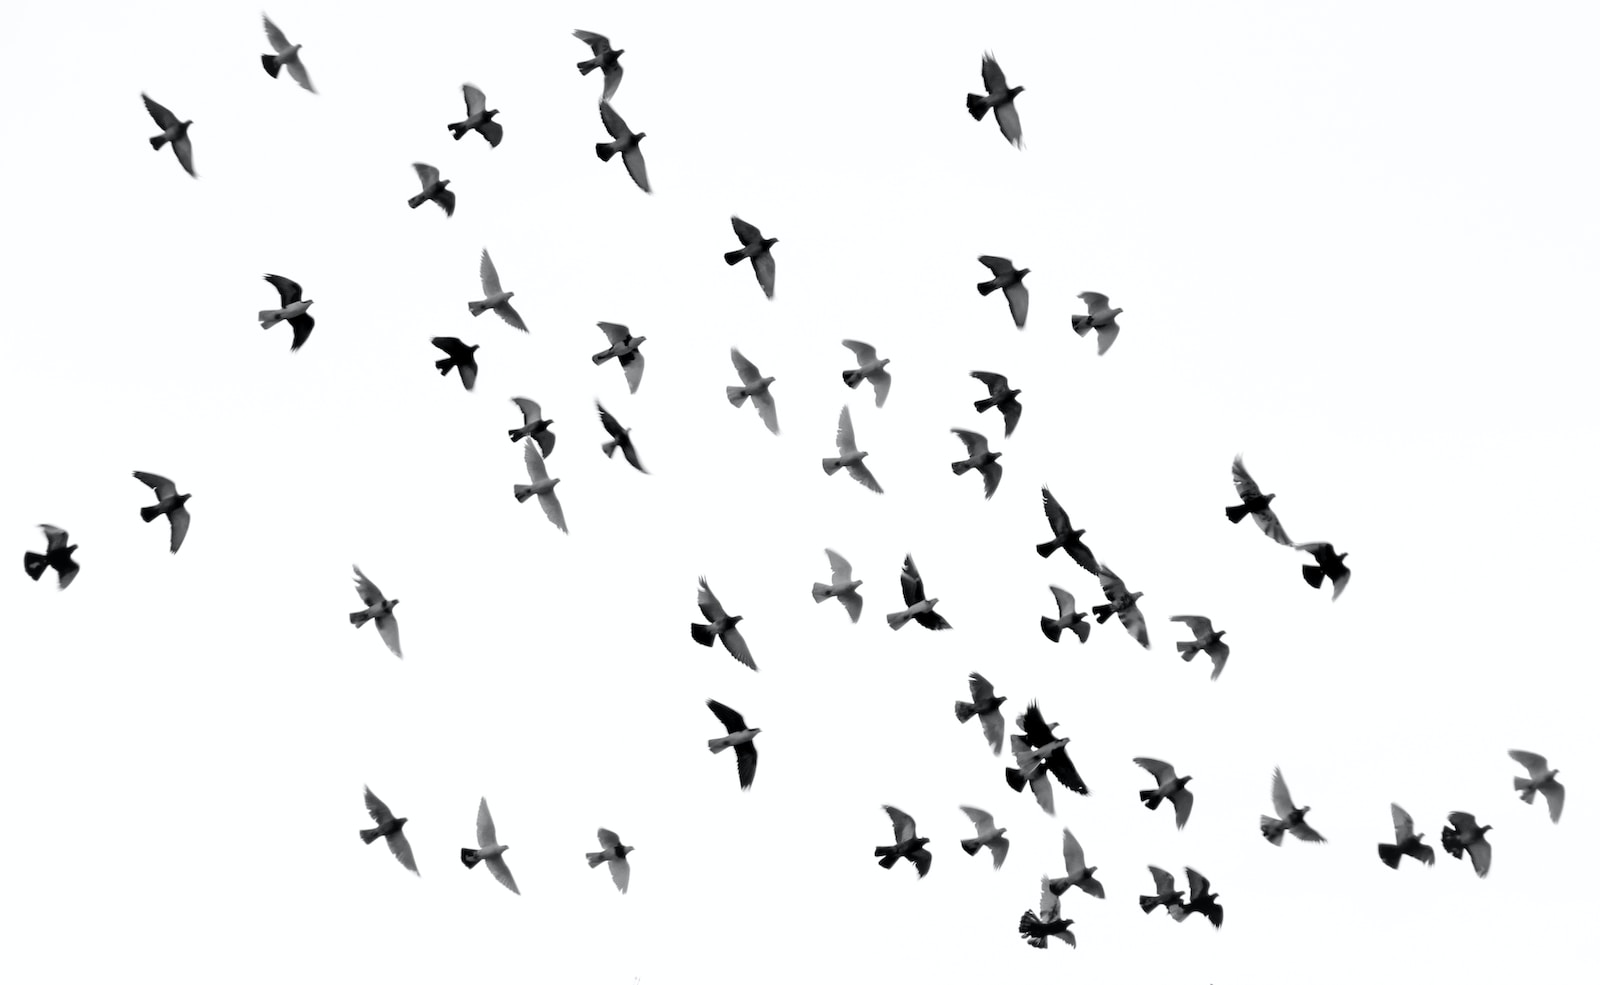 Zagadkowe formacje i tajemnicze przemieszczenia – odkrywamy rzędy ptaków nowoczesnych